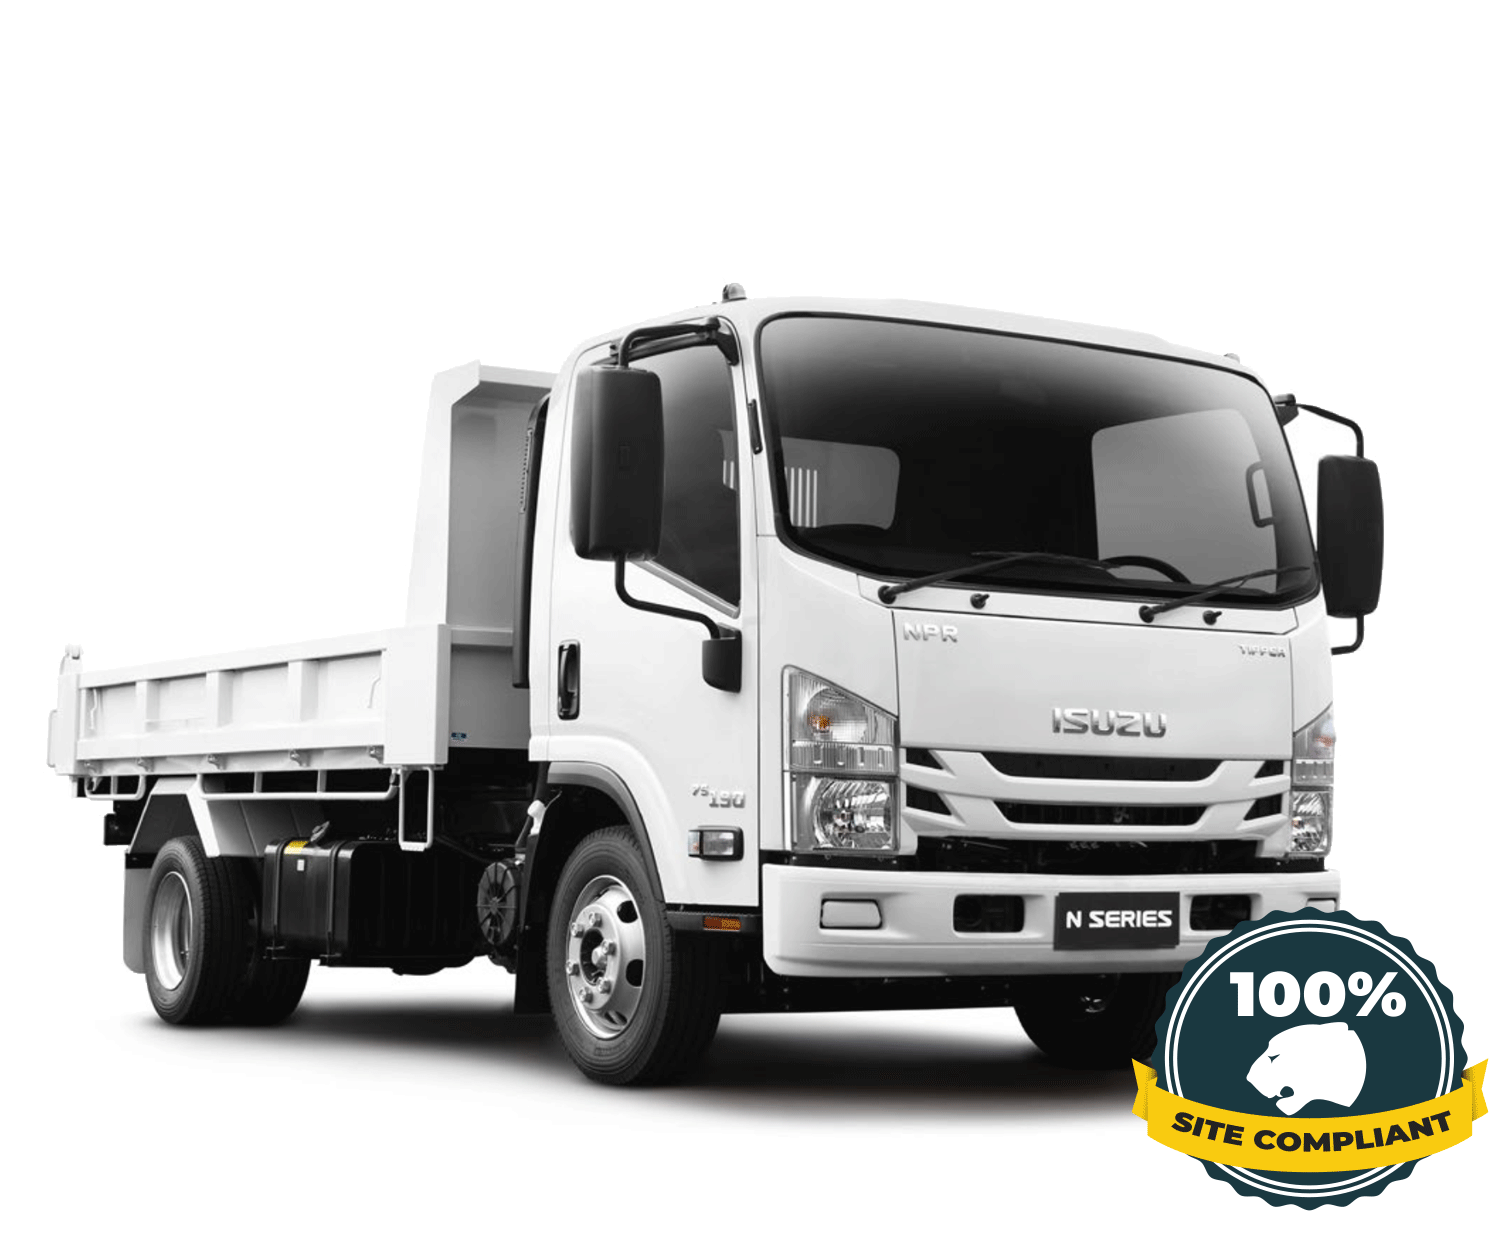 Isuzu Tipper Truck hire (100% Site Compliant)